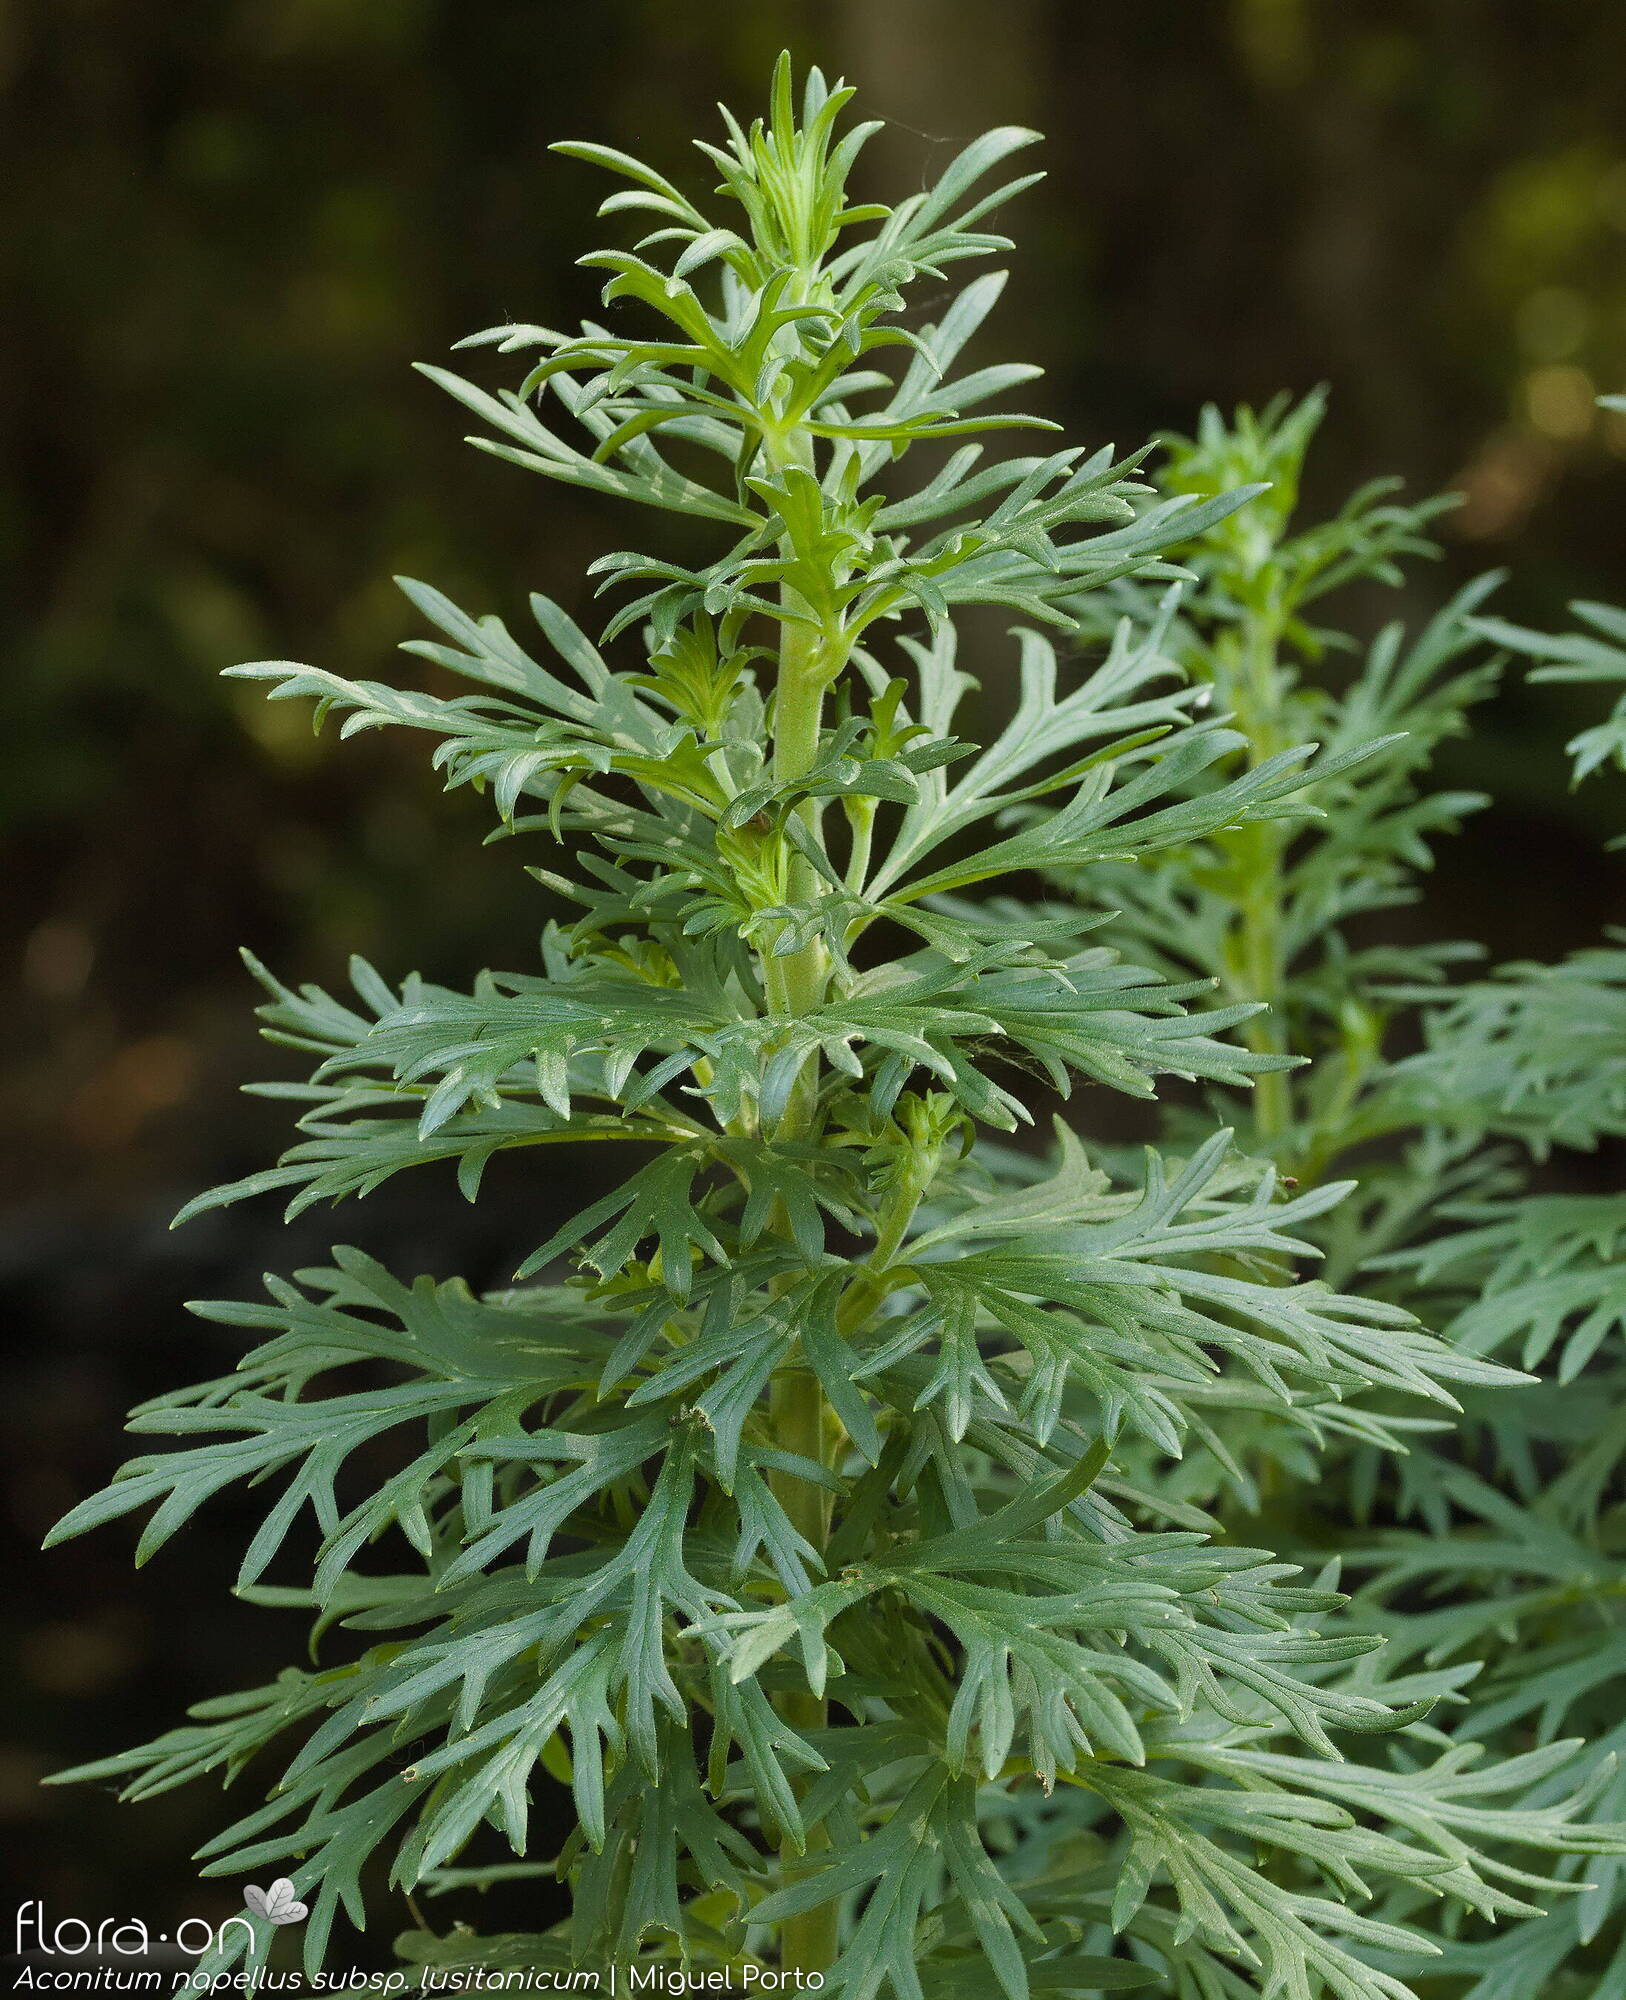 Aconitum napellus lusitanicum - Folha (geral) | Miguel Porto; CC BY-NC 4.0